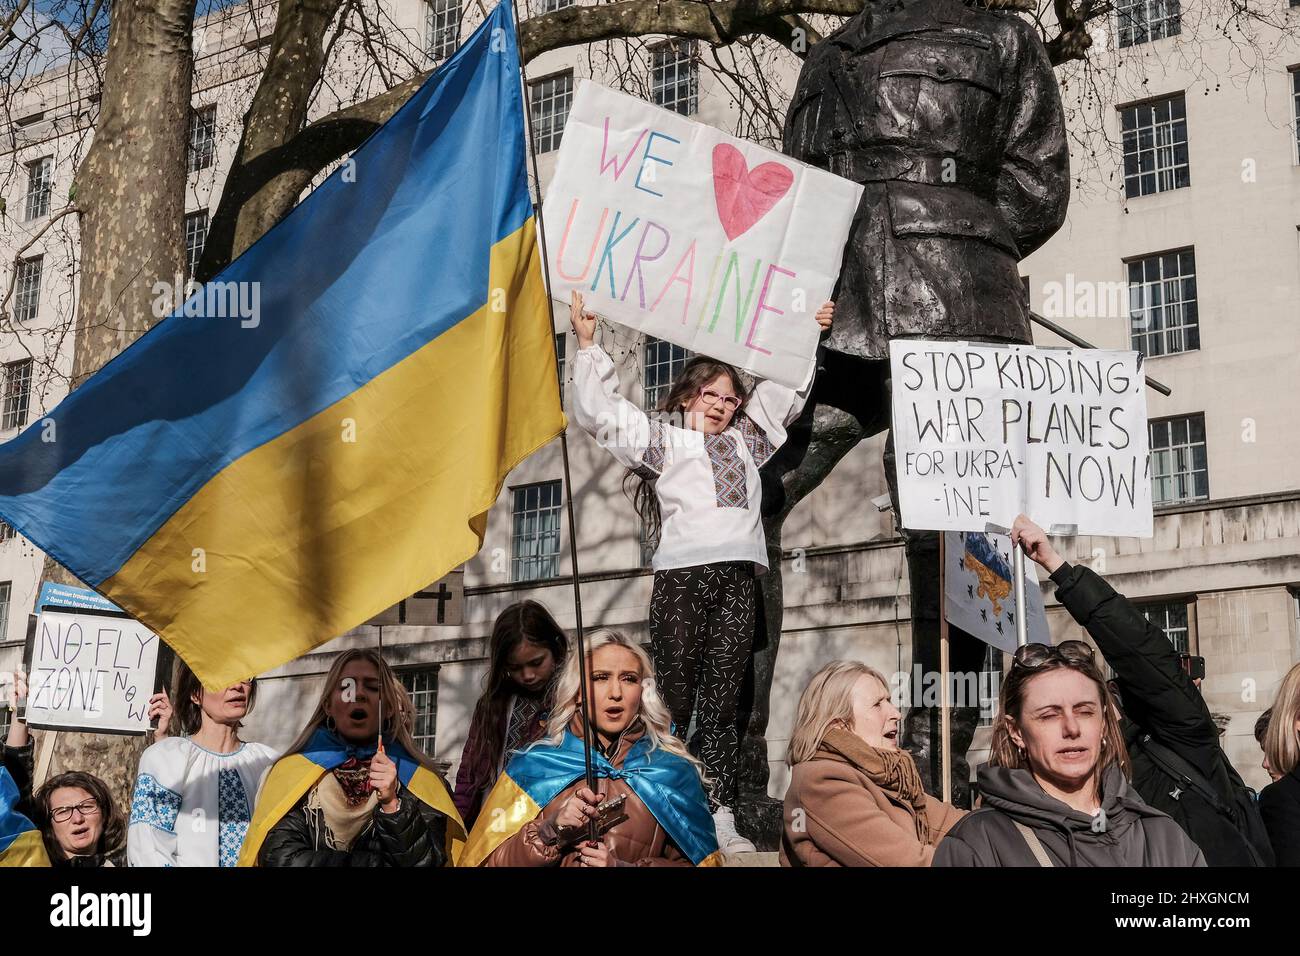 Londra UK, 12th marzo 2022. Cittadini e sostenitori ucraini continuano a radunarsi a Whitehall di fronte a Downing Street e chiedono ulteriori azioni contro la Russia per l'invasione dell'Ucraina da parte della comunità internazionale. Una giovane ragazza ha un segno "We Love Ukraine" sopra la folla. Foto Stock